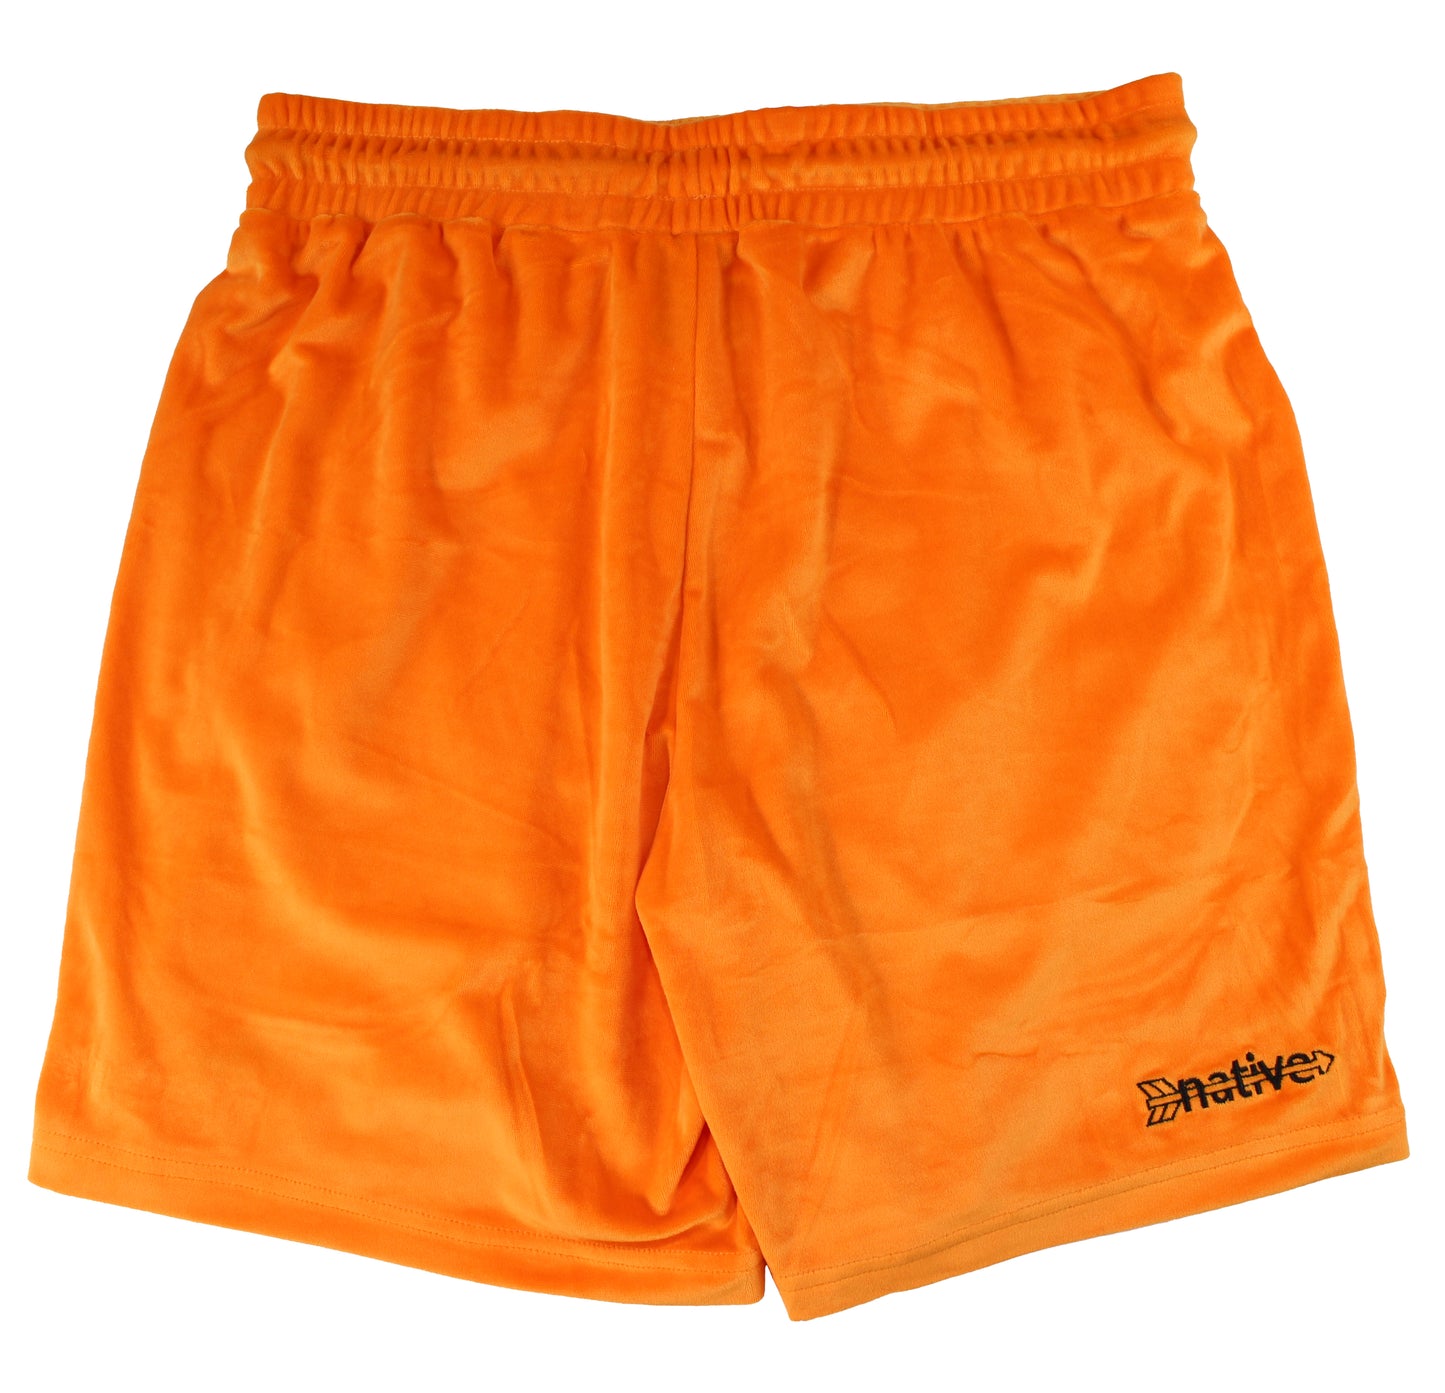 velour shorts in tangerine